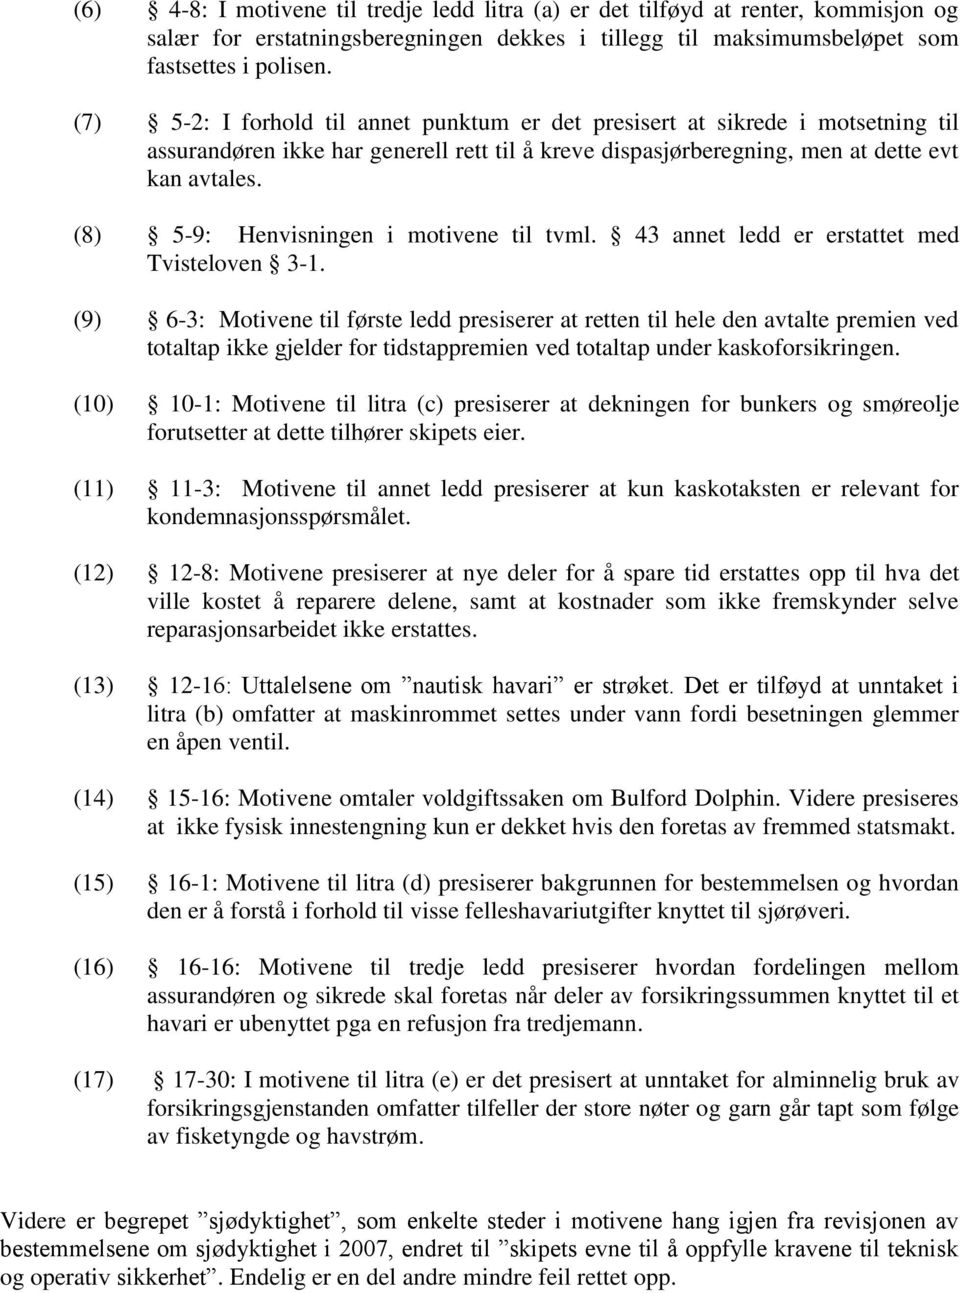 (8) 5-9: Henvisningen i motivene til tvml. 43 annet ledd er erstattet med Tvisteloven 3-1.